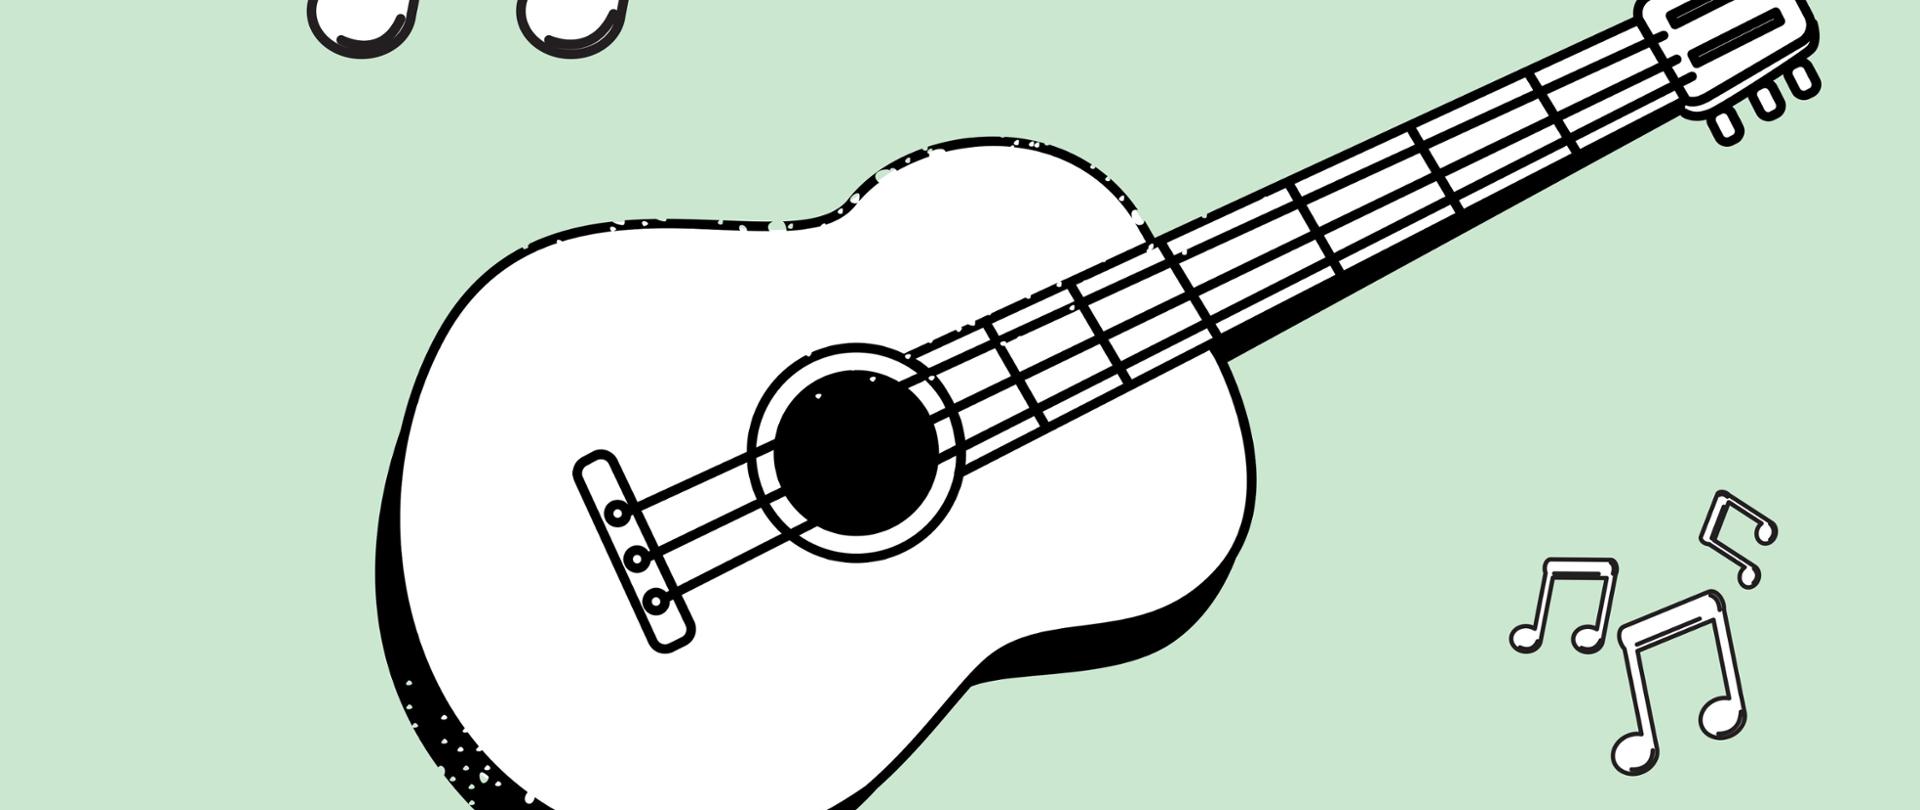 Plakat na zielono szarym tle, na środku biało czarna grafika gitary i nutek, poniżej tekst: Audycja klasy gitary, 30.01.2023 17:00, sala koncertowa PSM